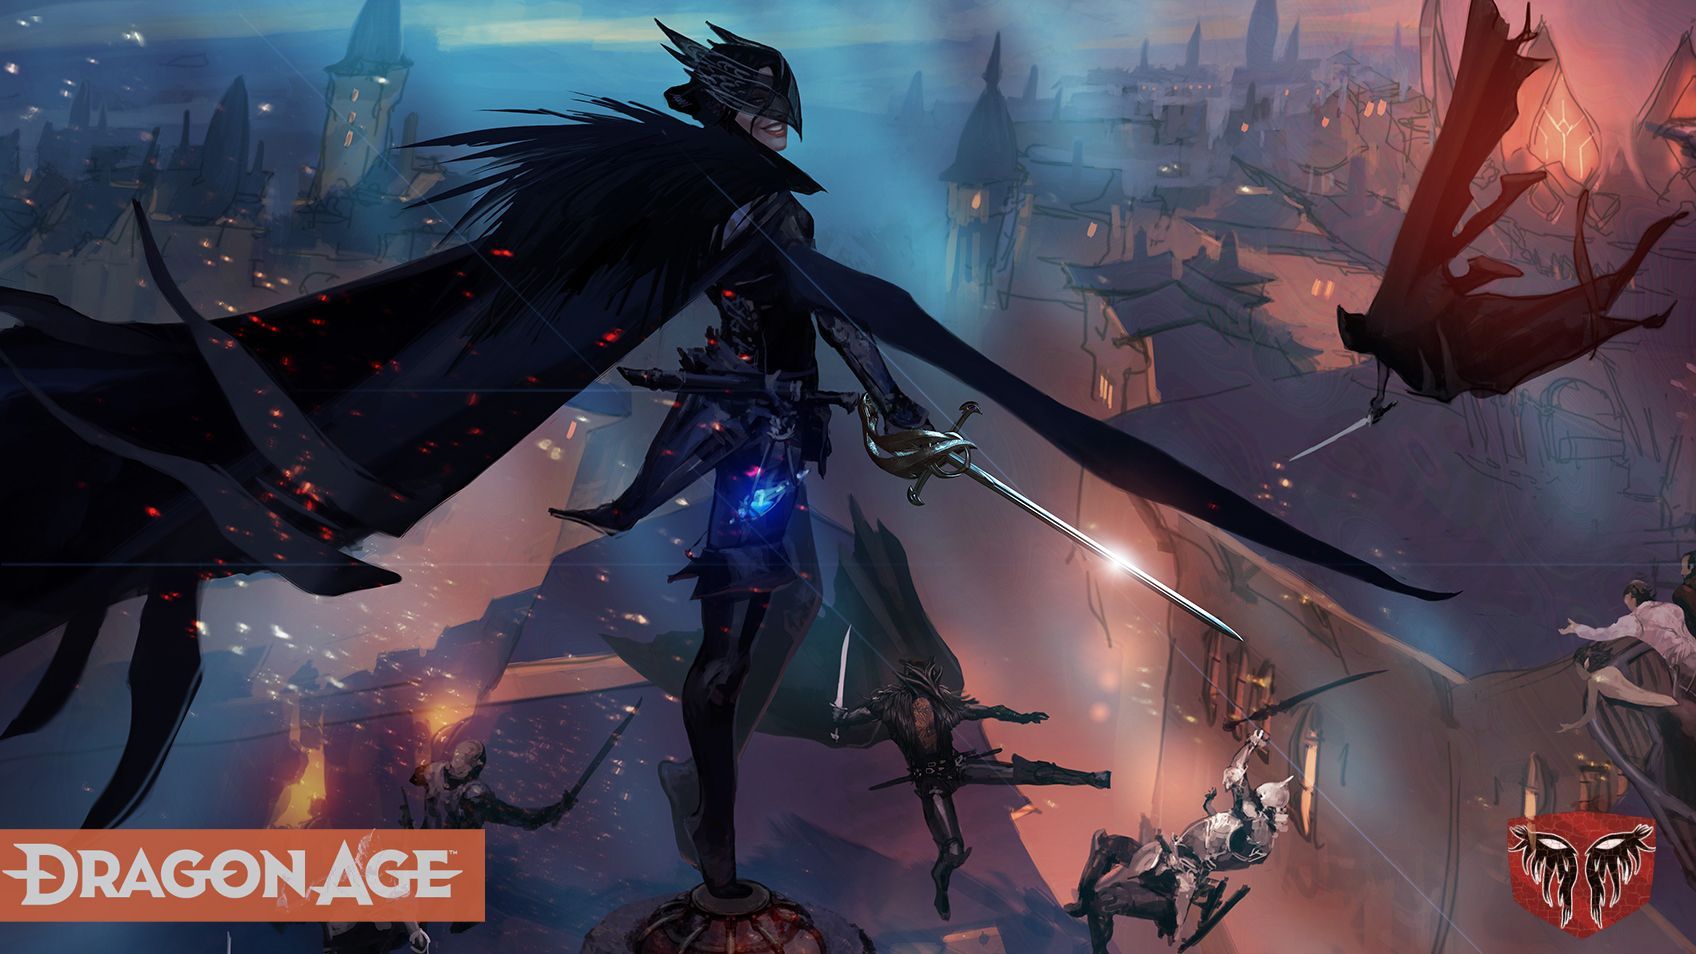 Un nouveau concept art de Dragon Age 4 montrant la Maison des Corbeaux